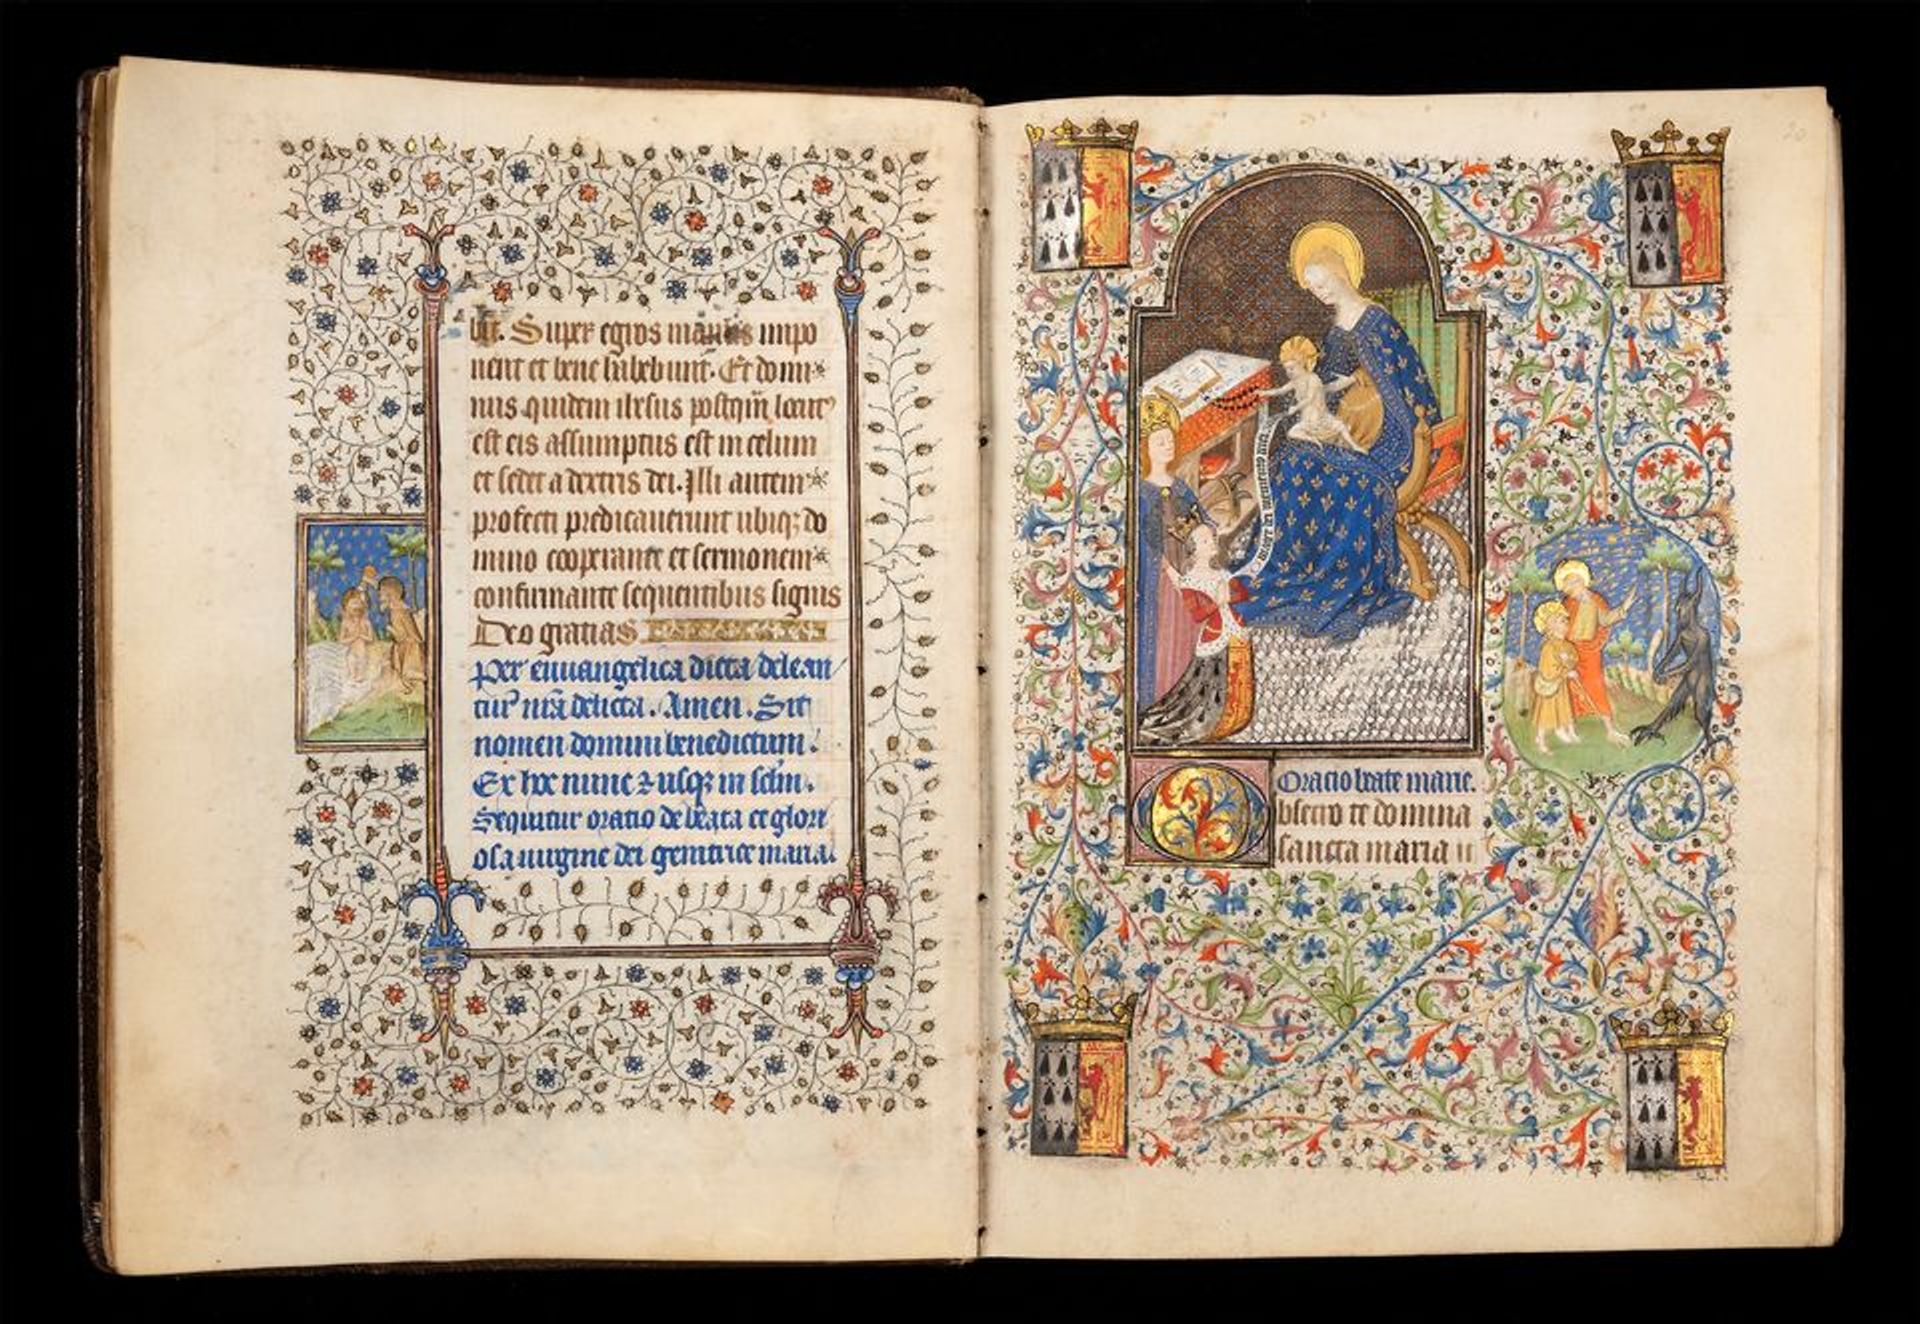 Le livre d’heures enluminé (vers 1431) a été repeint après la mort de la première épouse de François Ier, duc de Bretagne, afin que le roi puisse l’offrir à sa nouvelle épouse. © The Fitzwilliam Museum, Cambridge